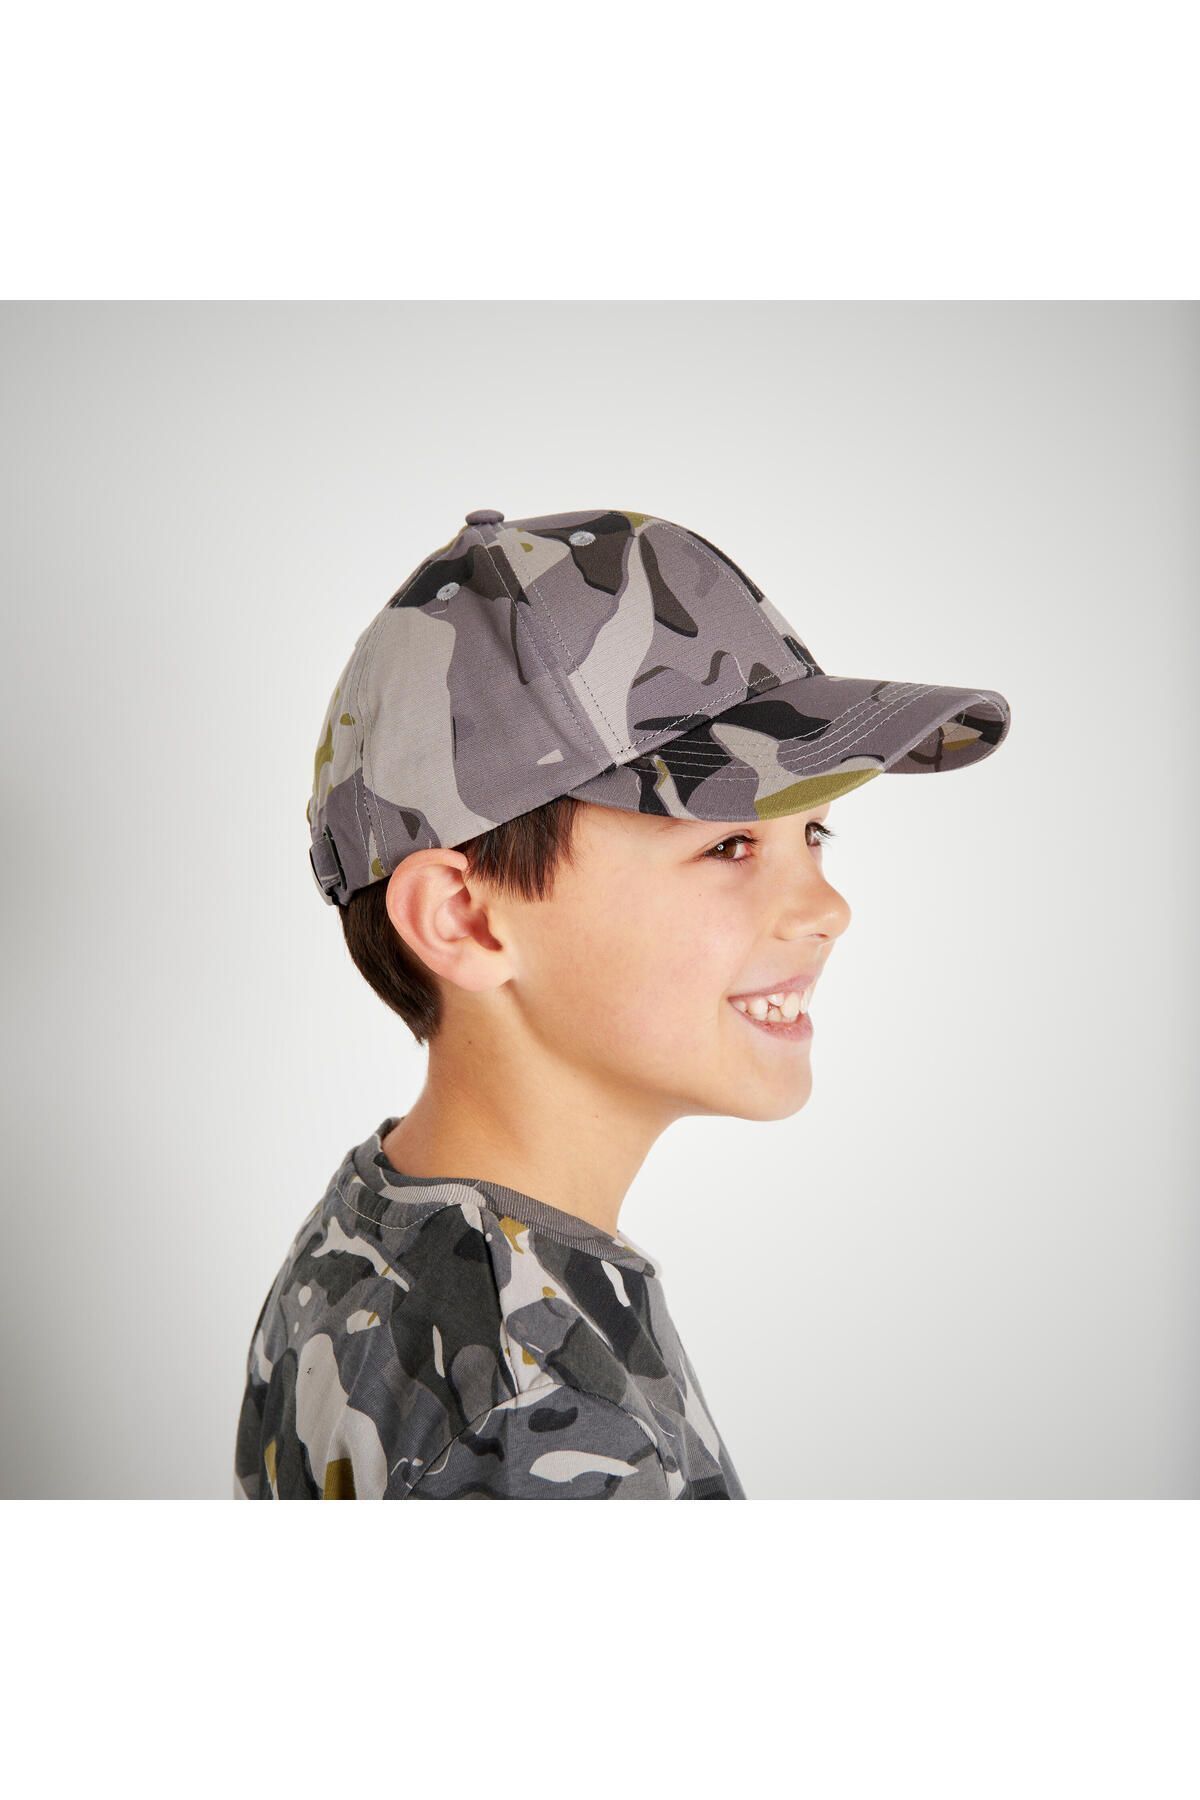 Decathlon Çocuk Şapkası - Avcılık Ve Doğa Gözlemi - Gri / Kamuflaj Desenli - Woodland